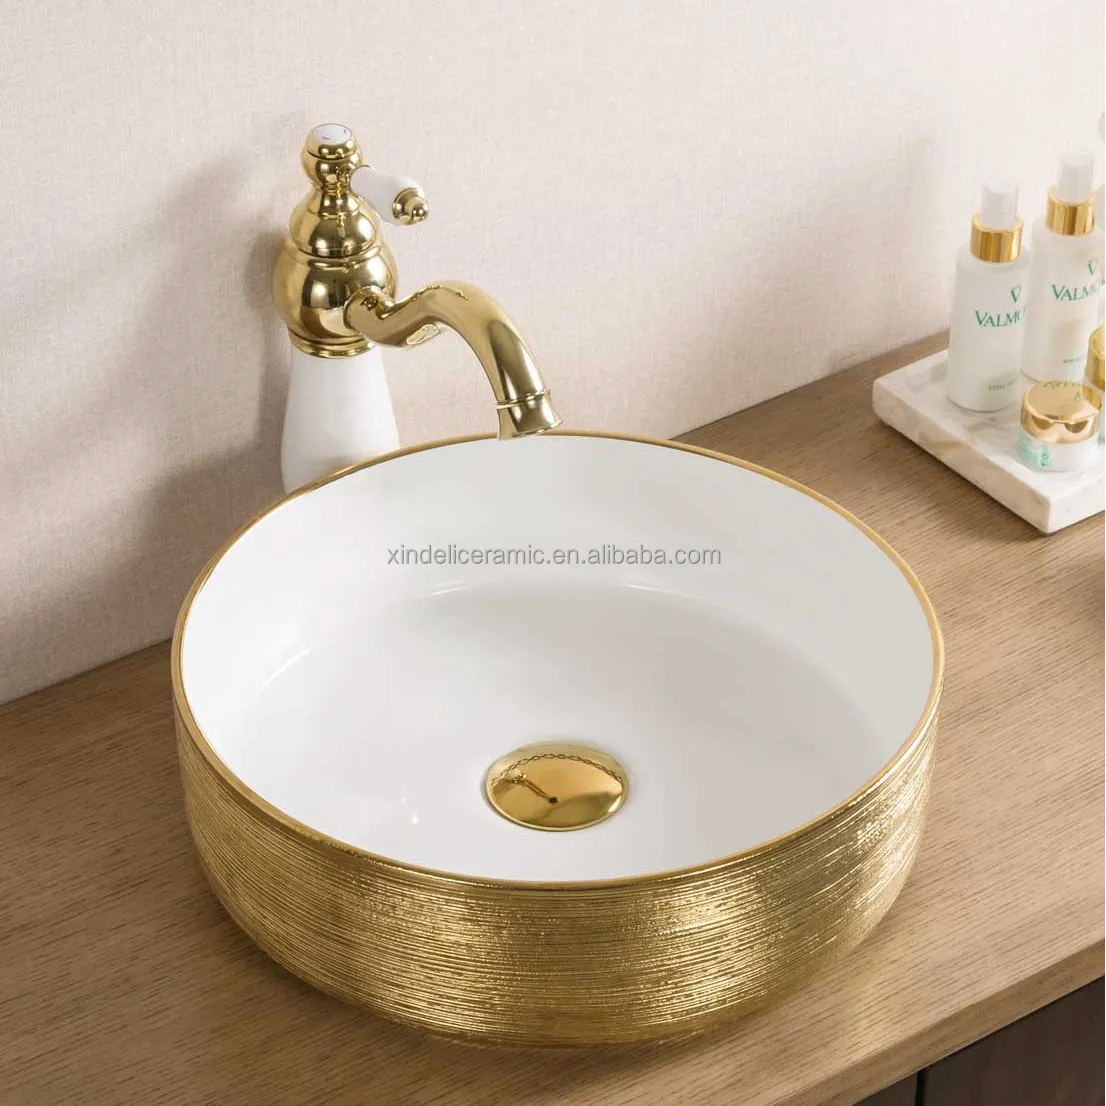 XDL-D357H130 Nizza Design Kunst weiß Galvanik Bad Waschbecken Gold Keramik Arbeits platte Waschbecken